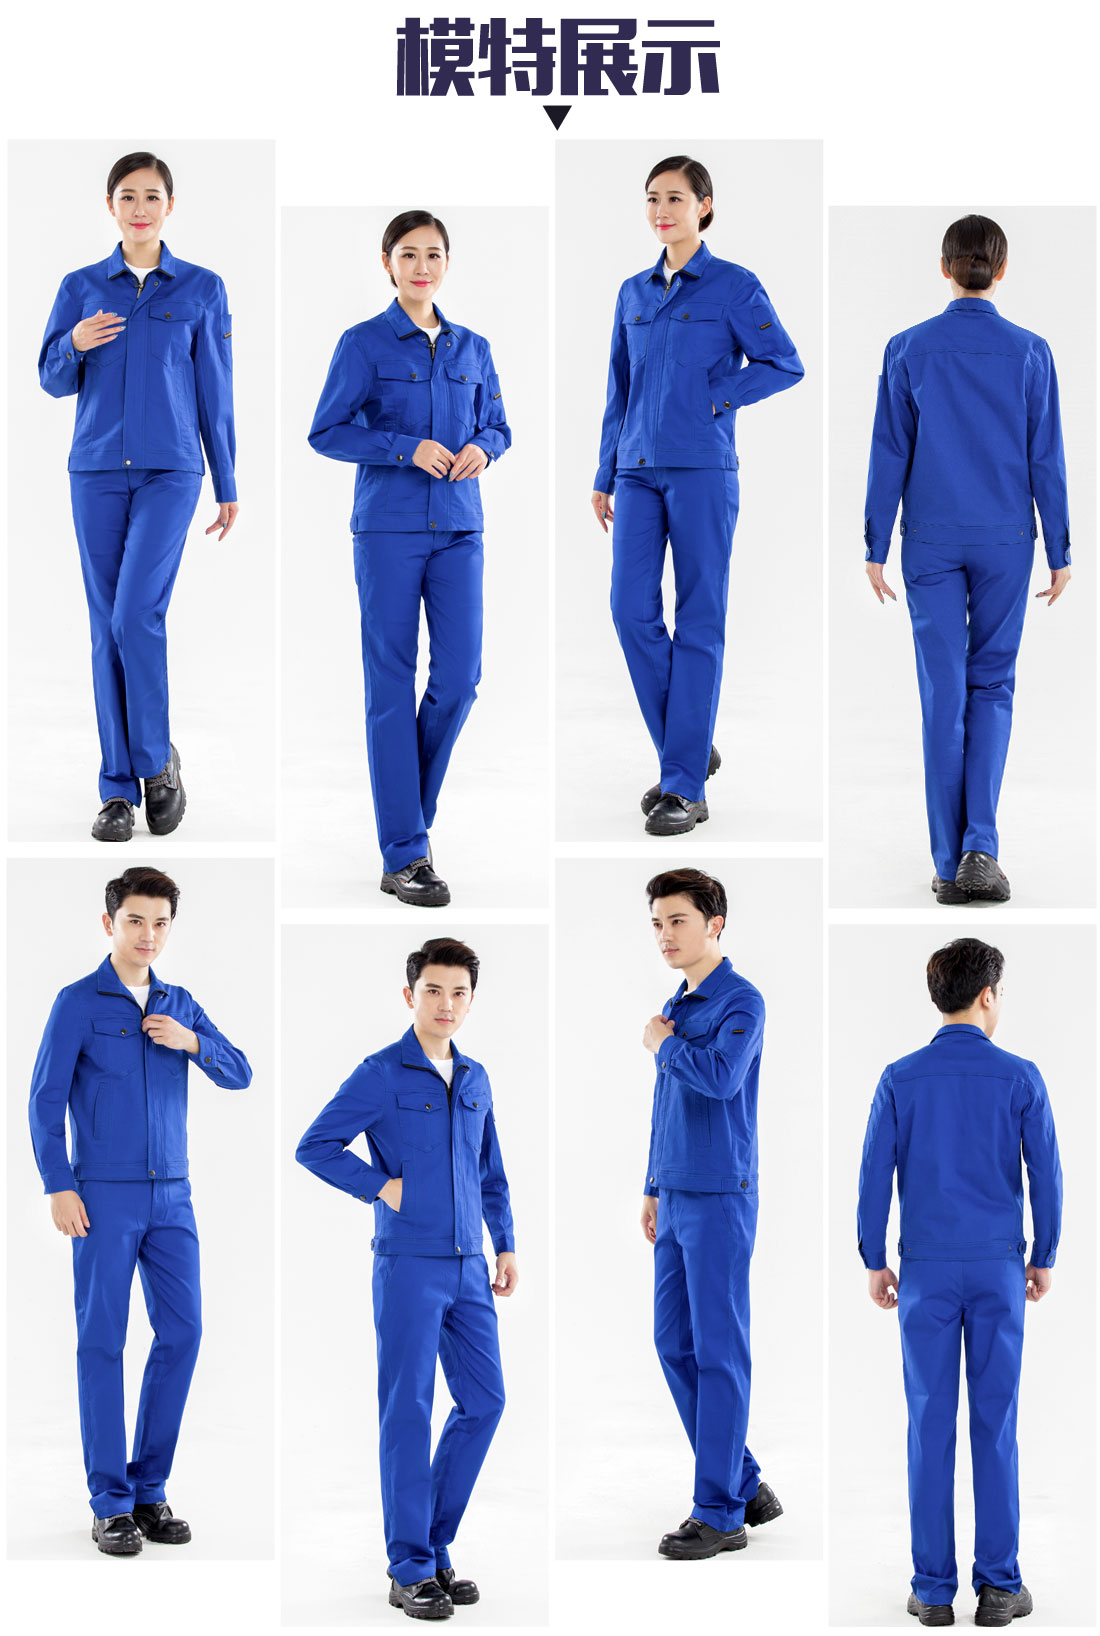 新款湖蓝色工作服的模特展示